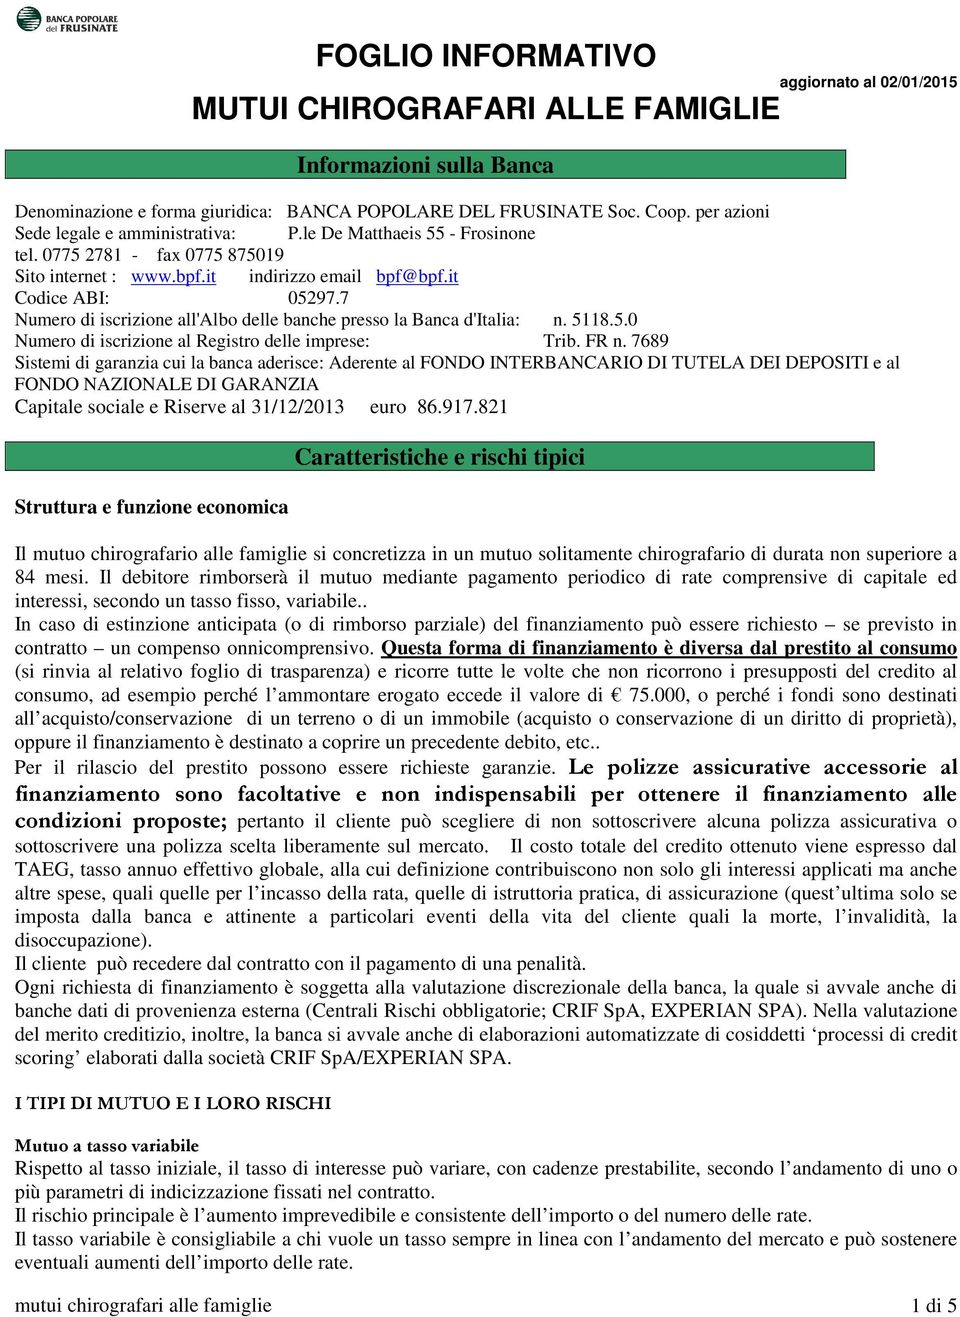 7 Numero di iscrizione all'albo delle banche presso la Banca d'italia: n. 5118.5.0 Numero di iscrizione al Registro delle imprese: Trib. FR n.